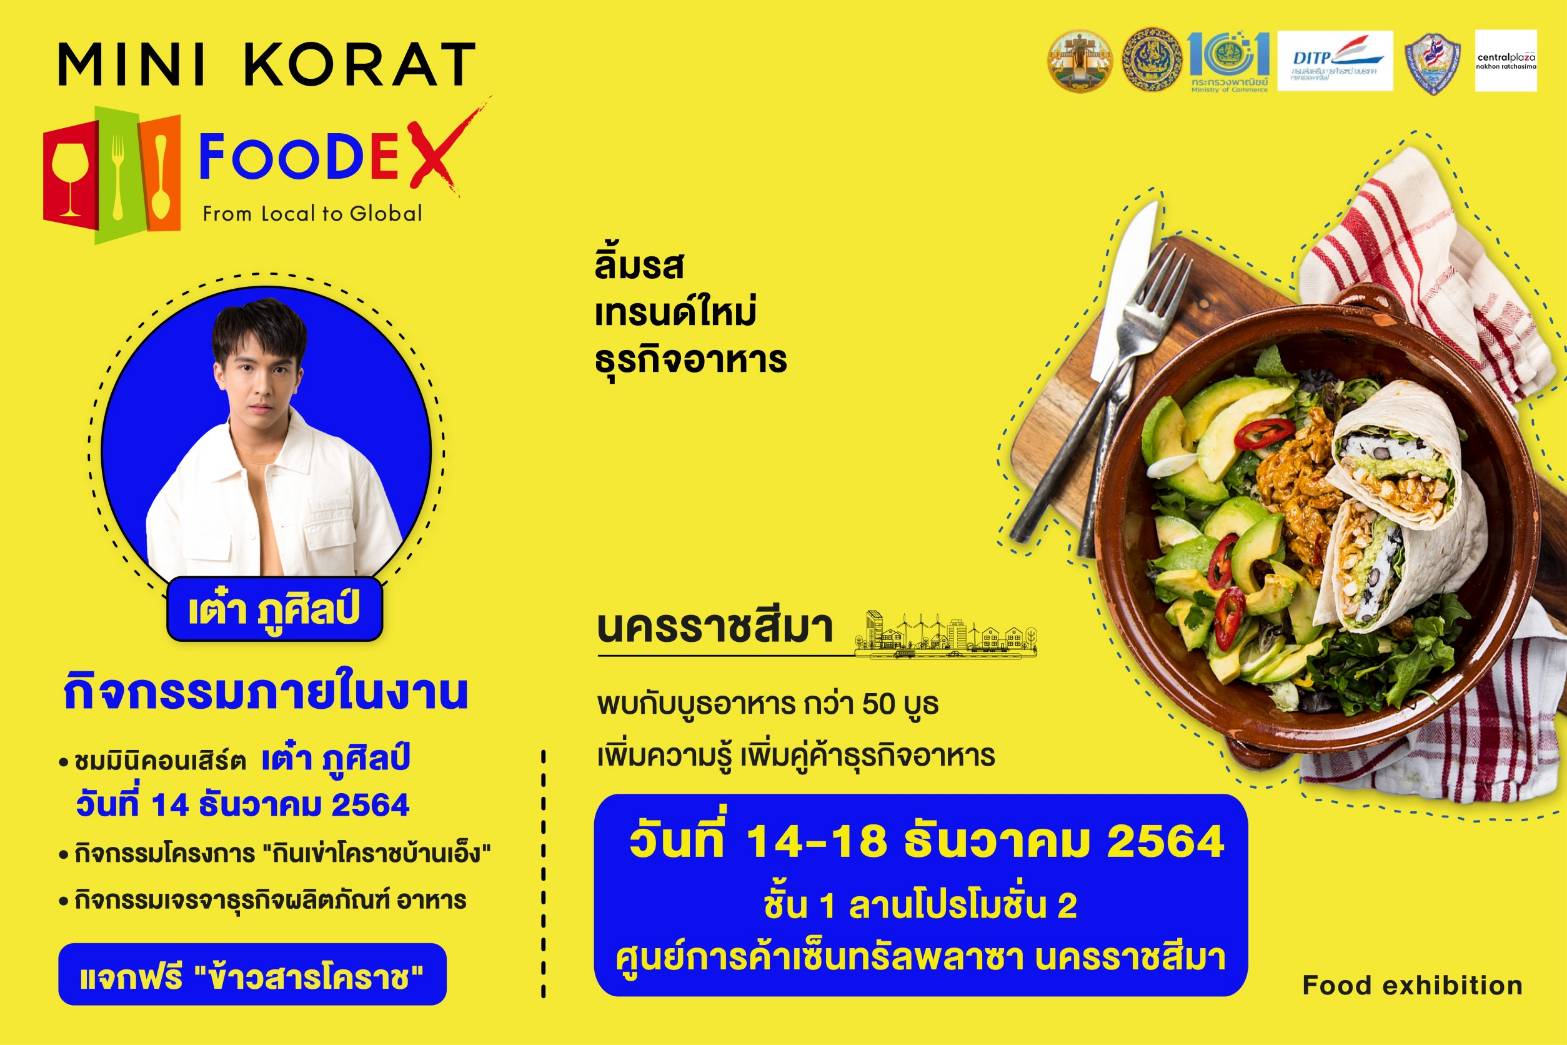 พบกับงานอาหารสุดยิ่งใหญ่ส่งท้ายปี “Mini Korat FooDex” รวบรวมอาหารอร่อยของดี ของโคราชมาไว้ในงานเดียวกว่า 50 ร้านค้า